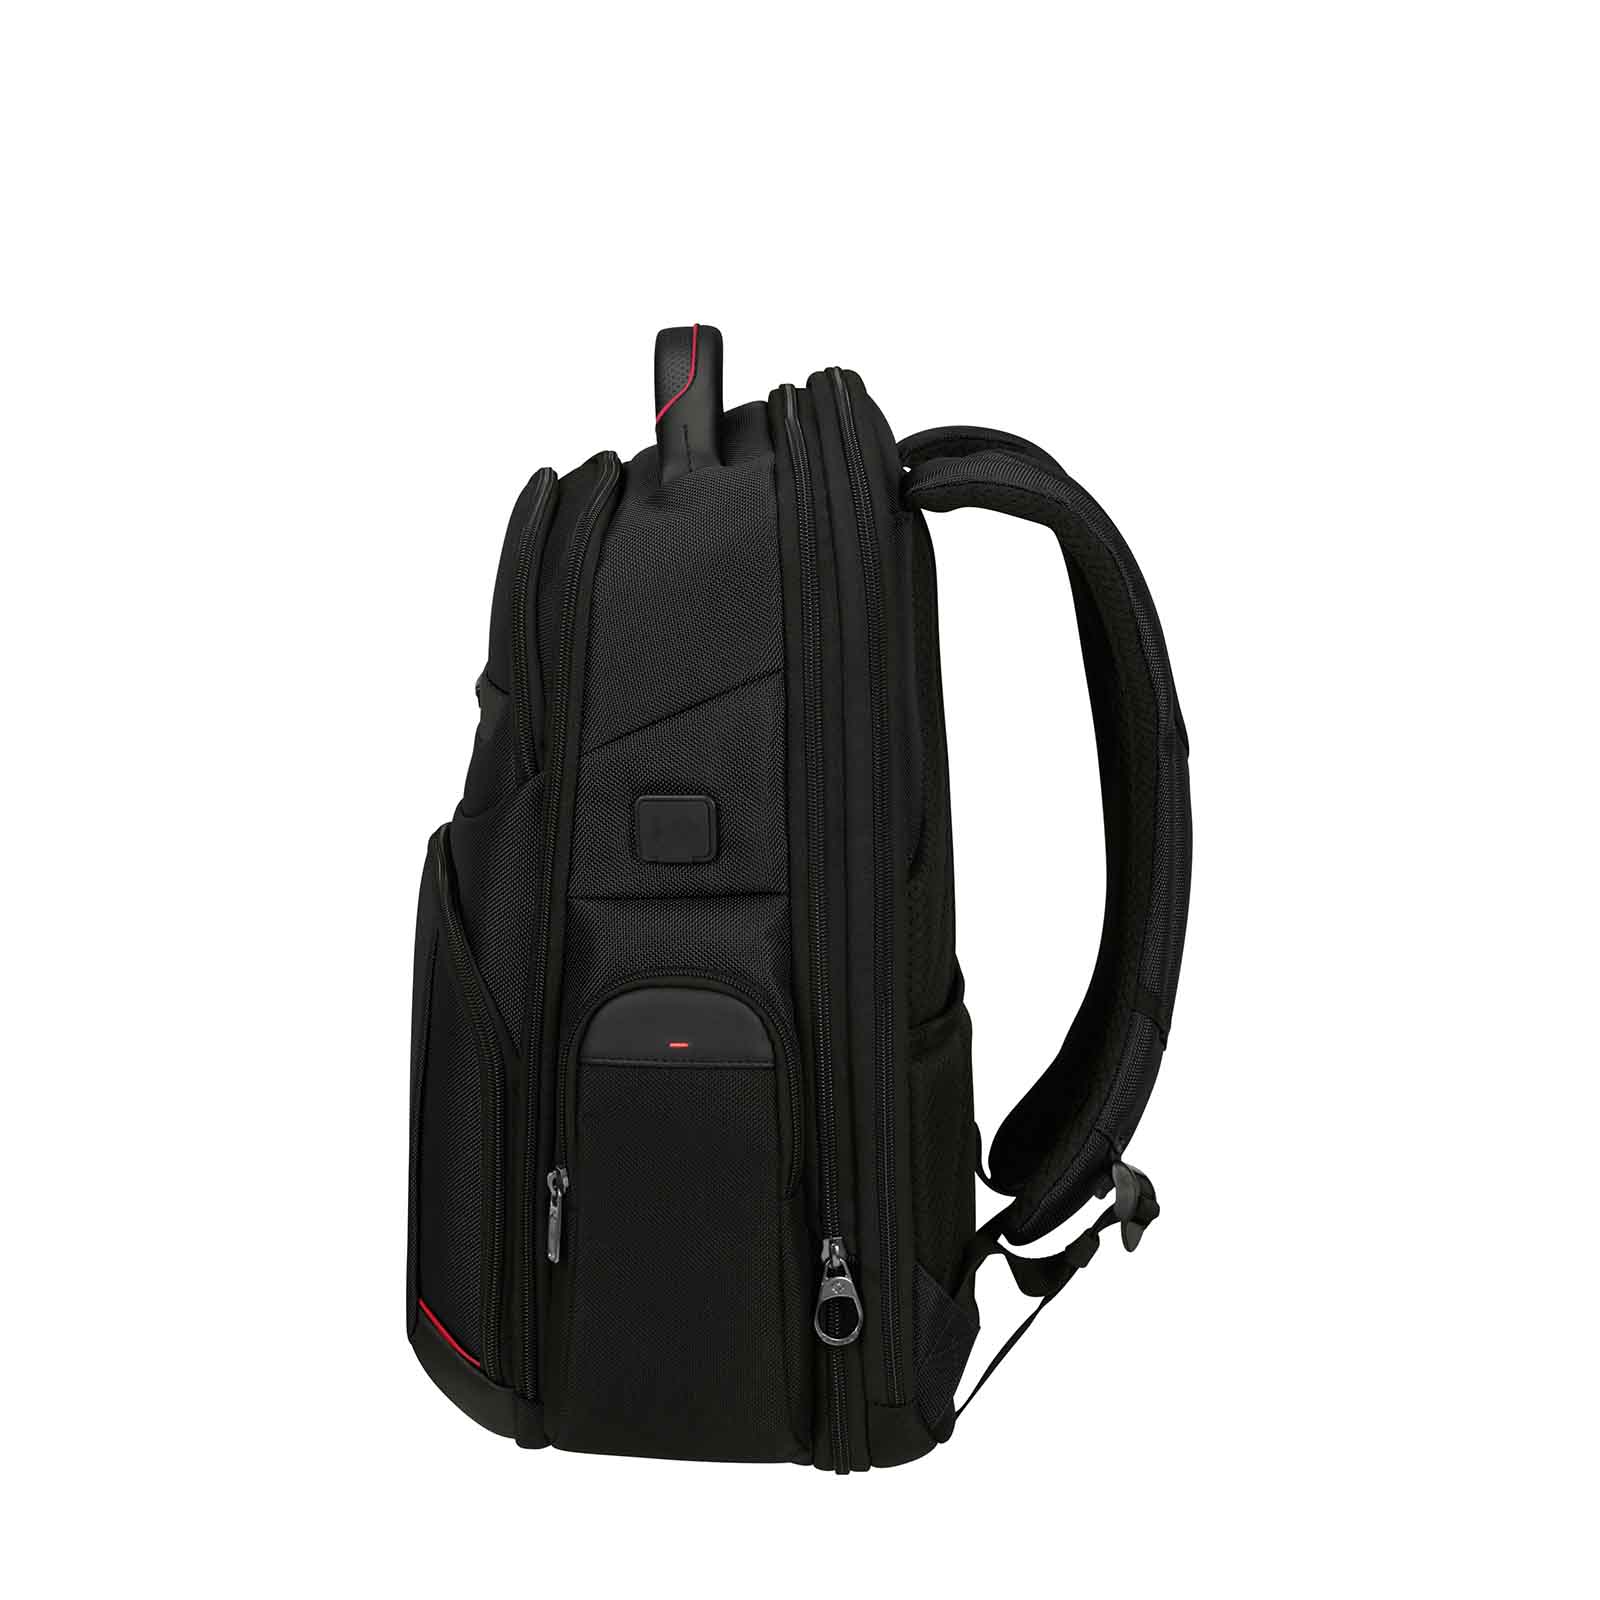 Samsonite-Pro-Dlx-6-Laptop-Backpack-15-Inch-Side